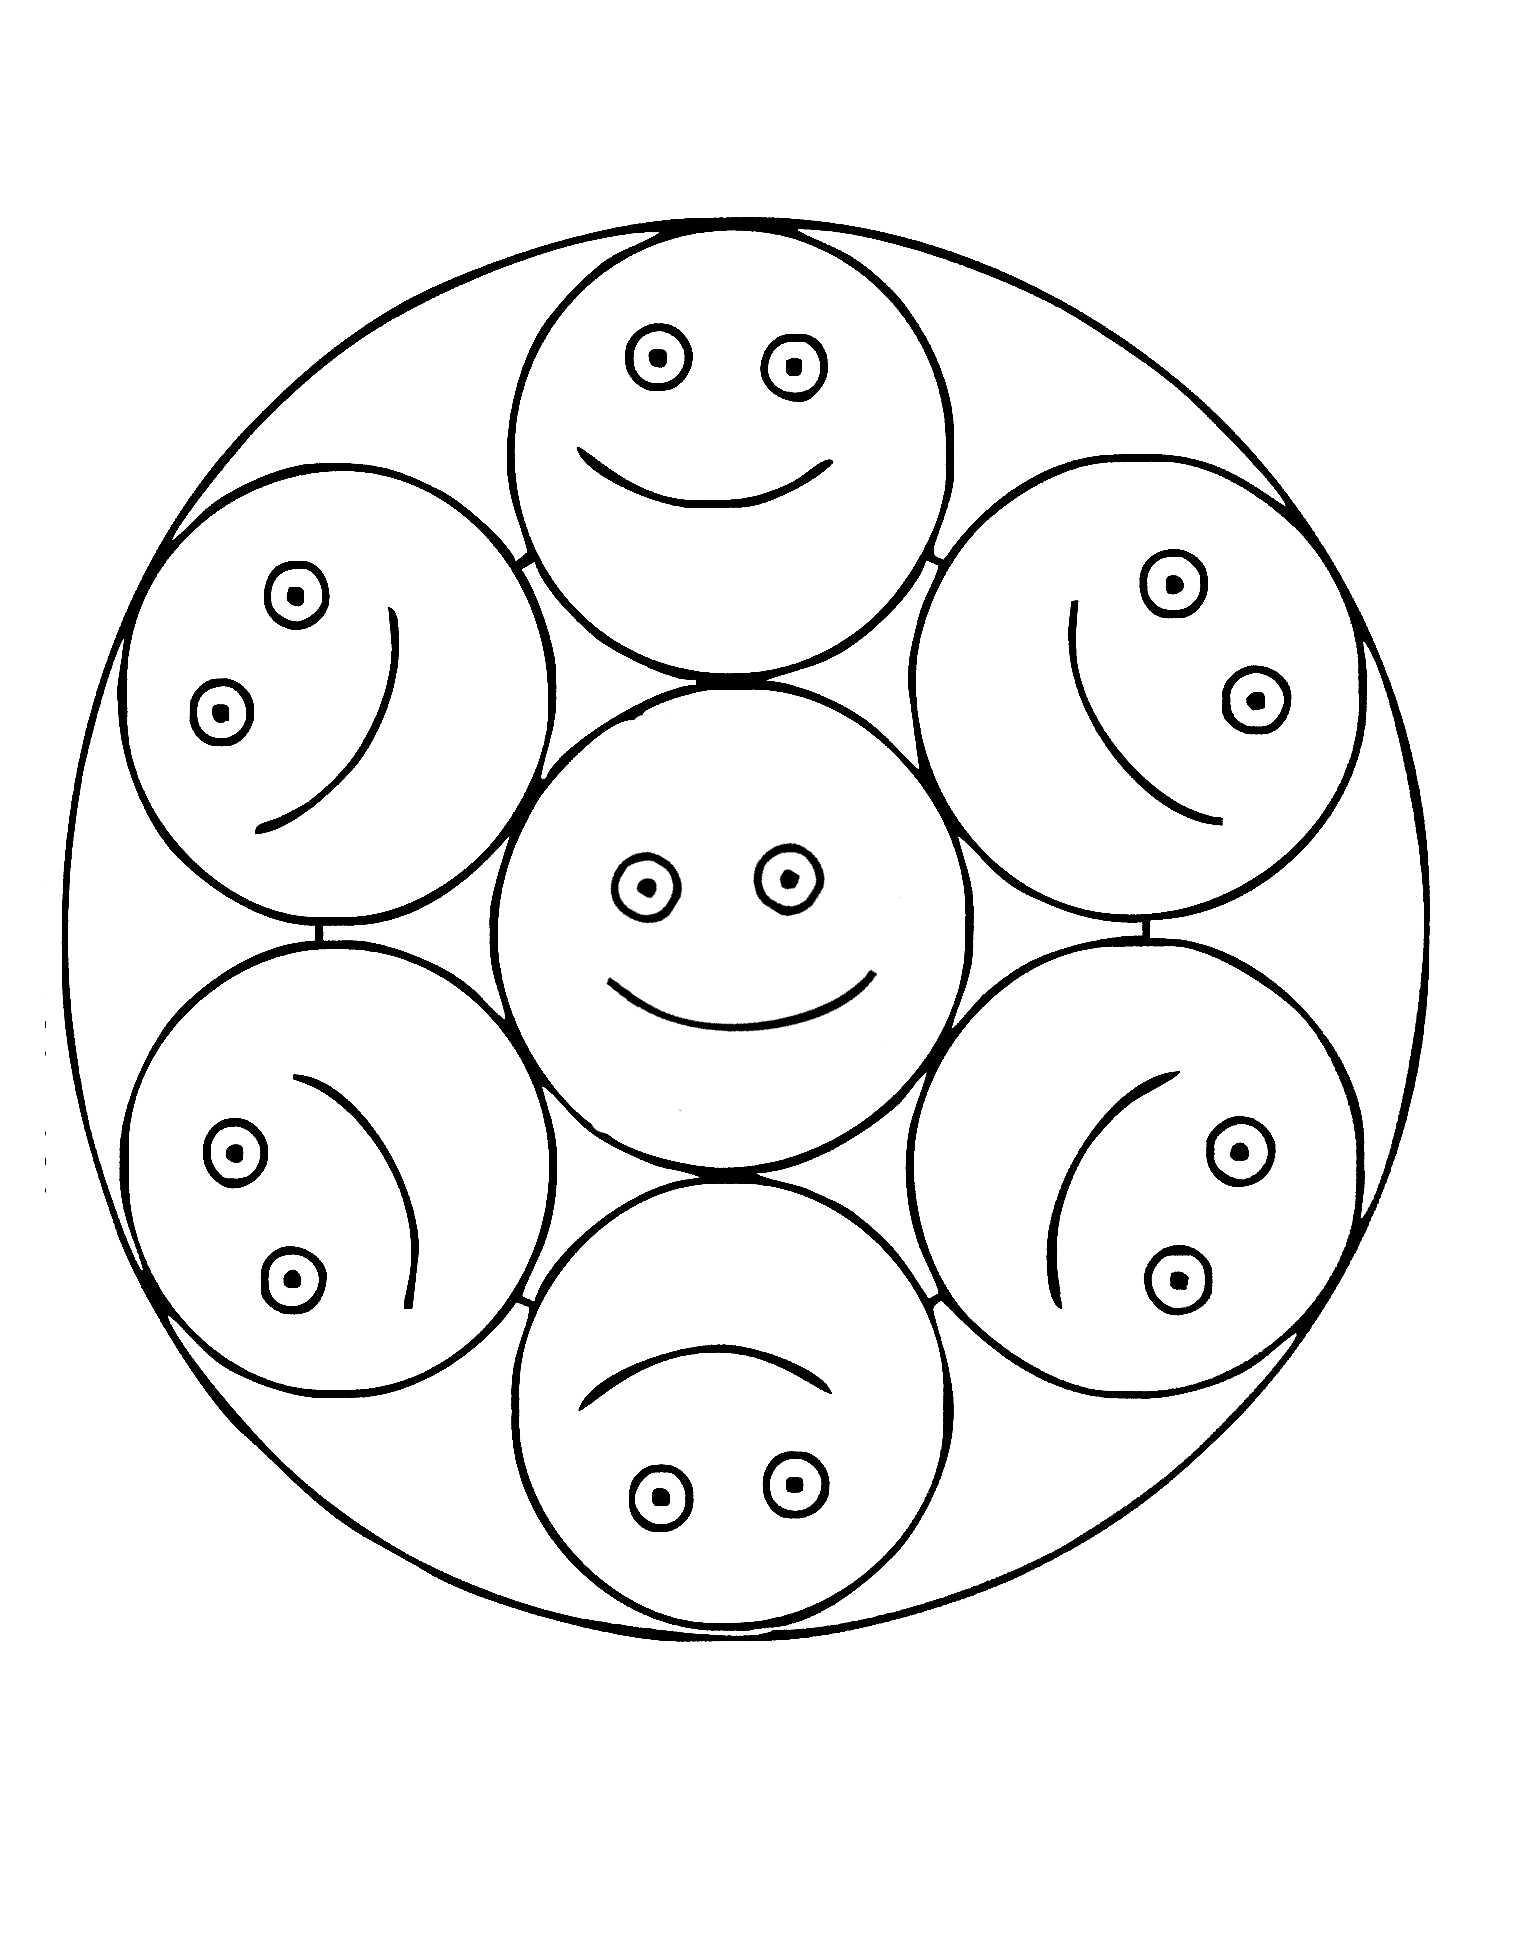 Mandala très simple avec des smileys